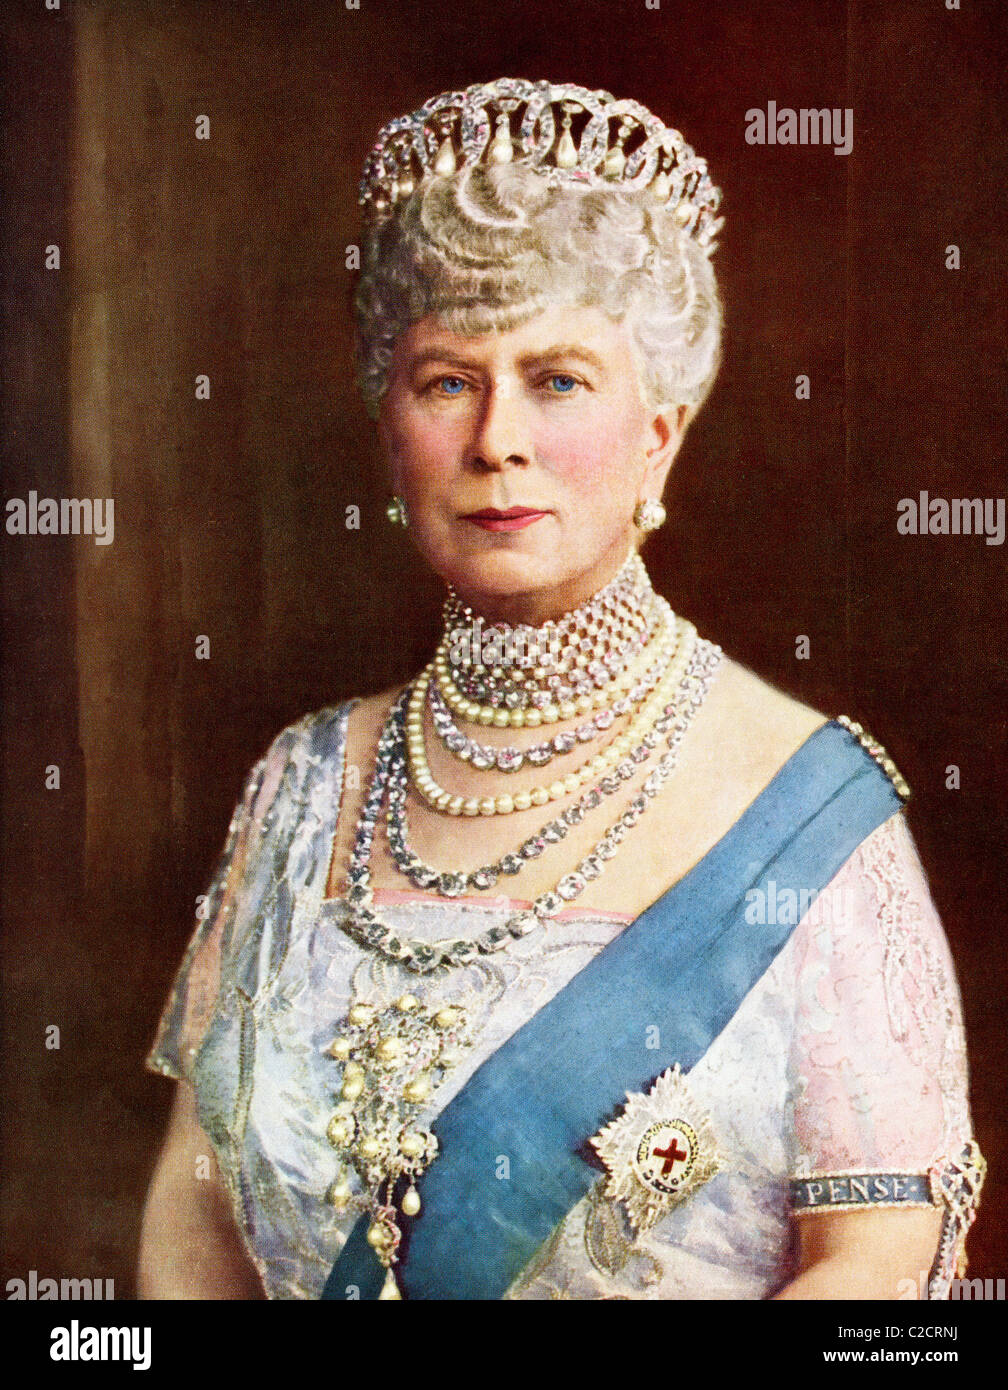 Queen Mary, consorte del re Giorgio V, Maria di Teck, Victoria Mary Augusta Louise Olga Pauline Claudine Agnes, 1867 a 1953. Foto Stock